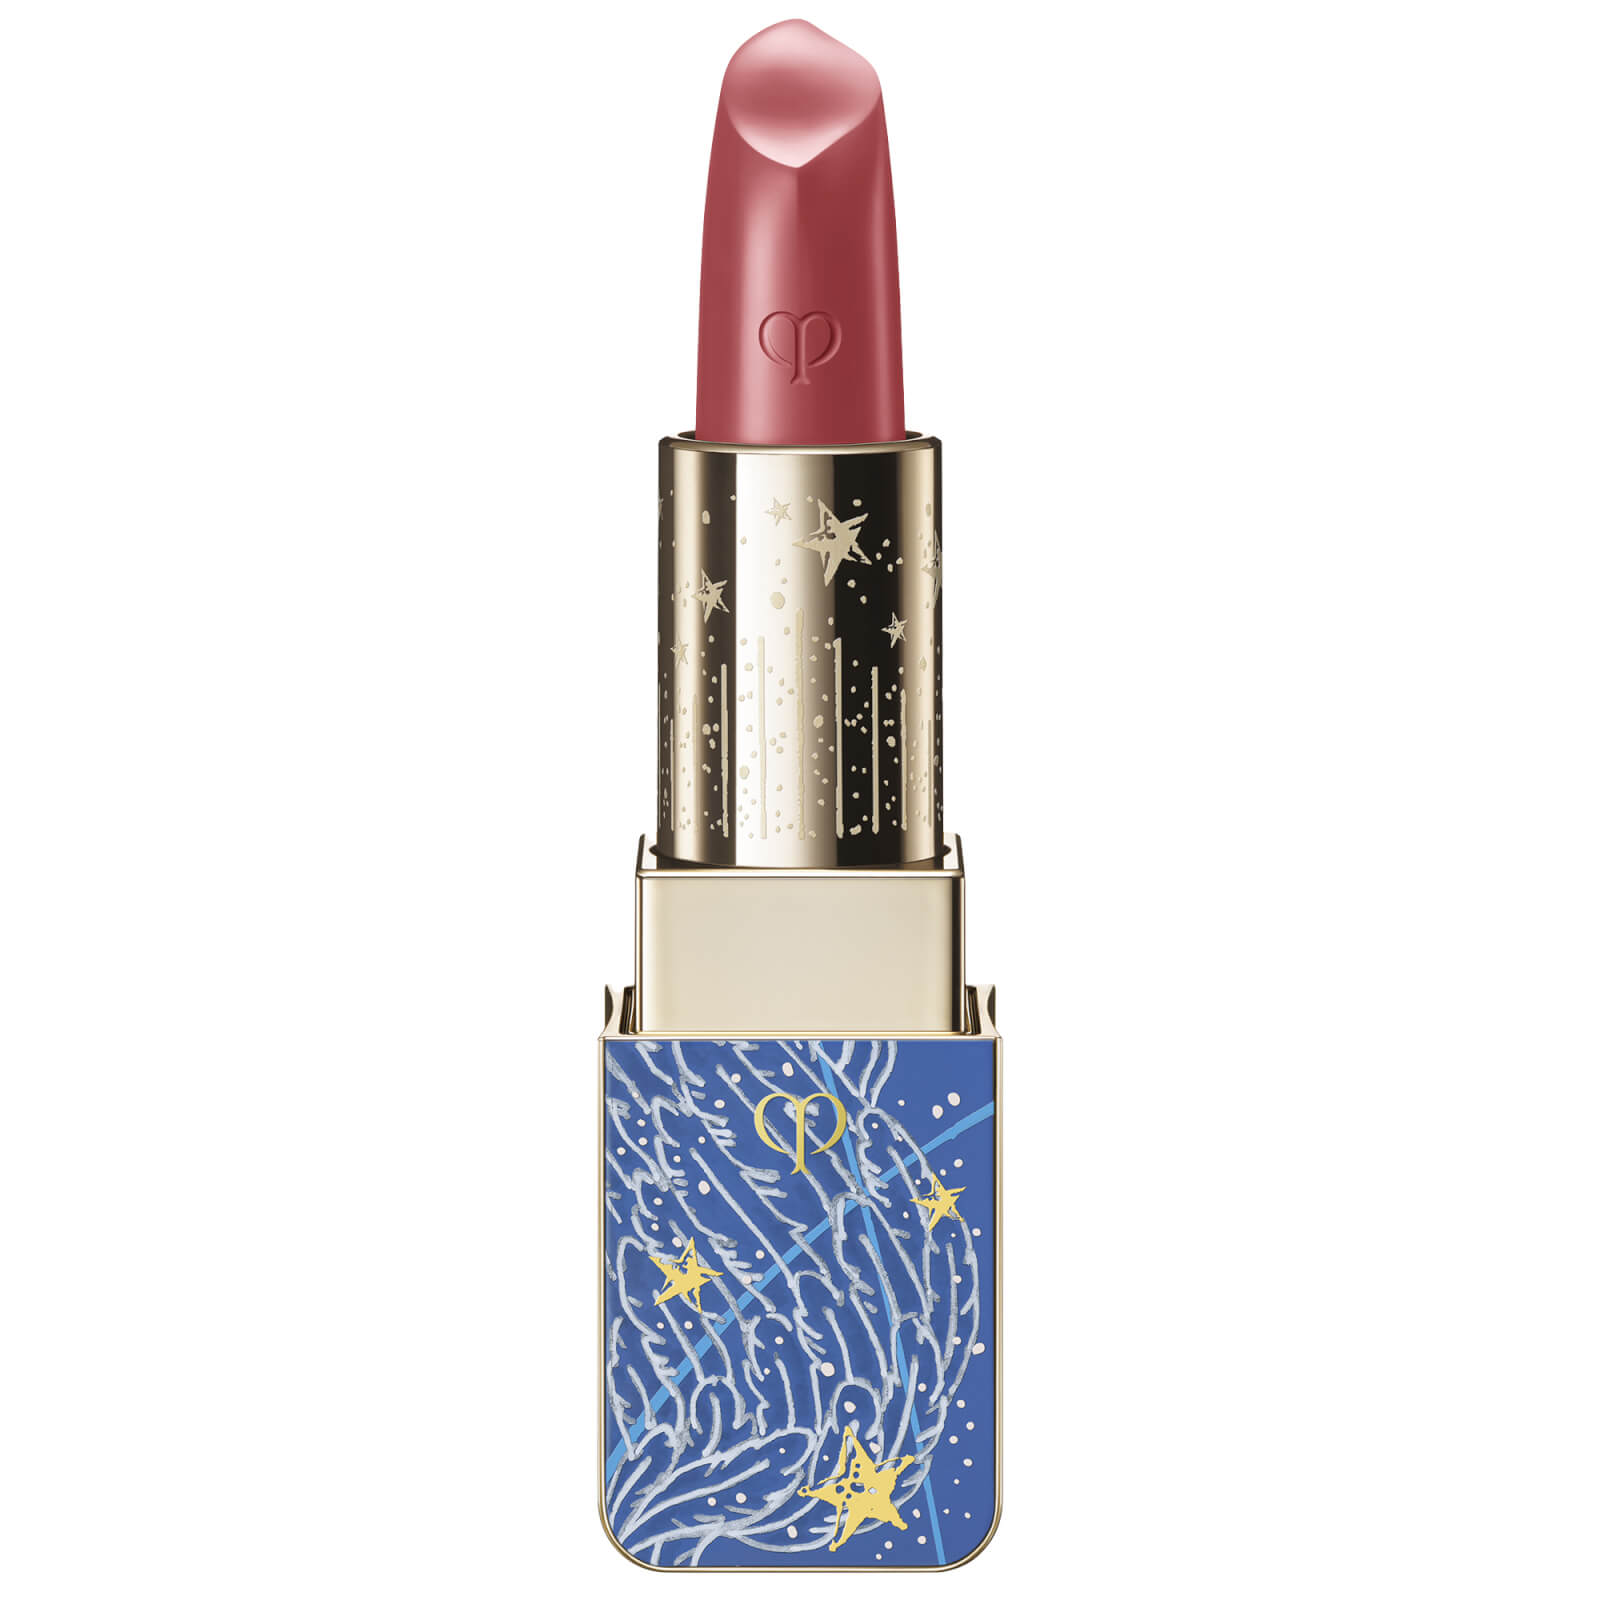 Clé de Peau Beauté Lipstick 4g (Various Shades) - 522 Cosmic Red